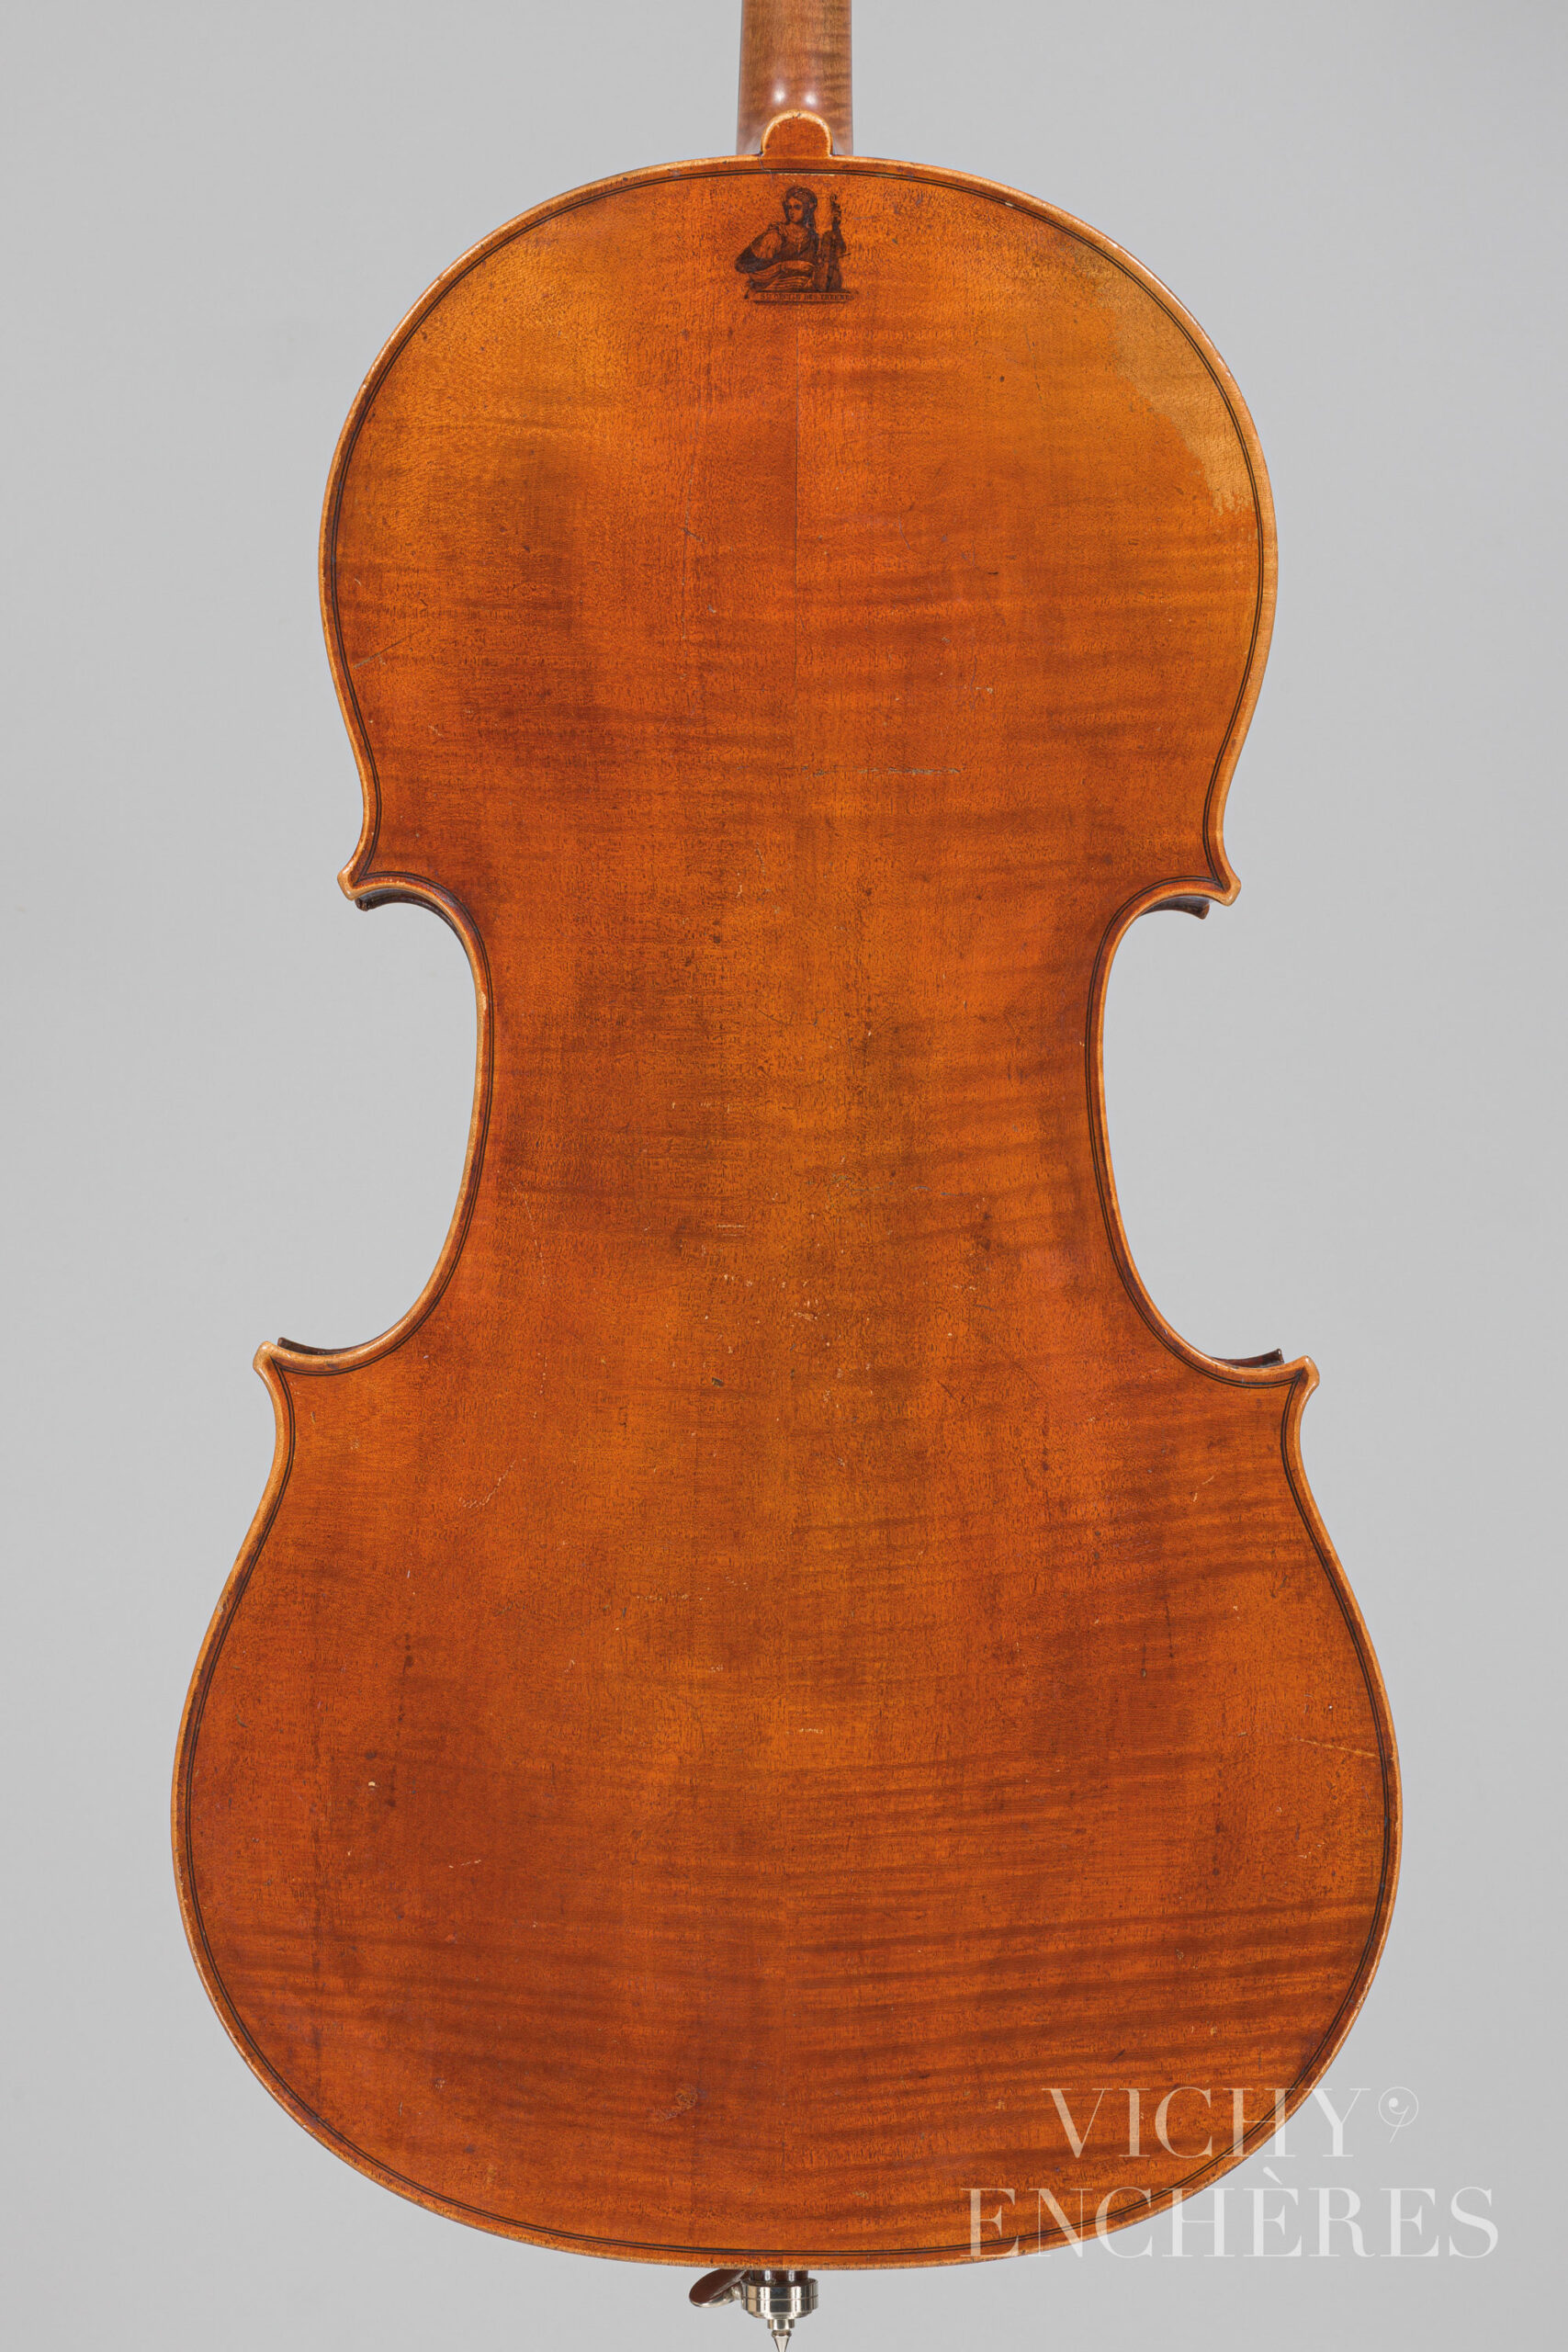 Violoncelle 1/2 de Nicolas VUILLAUME Instrument mis en vente par Vichy Enchères le 1er décembre 2022 © Christophe Darbelet